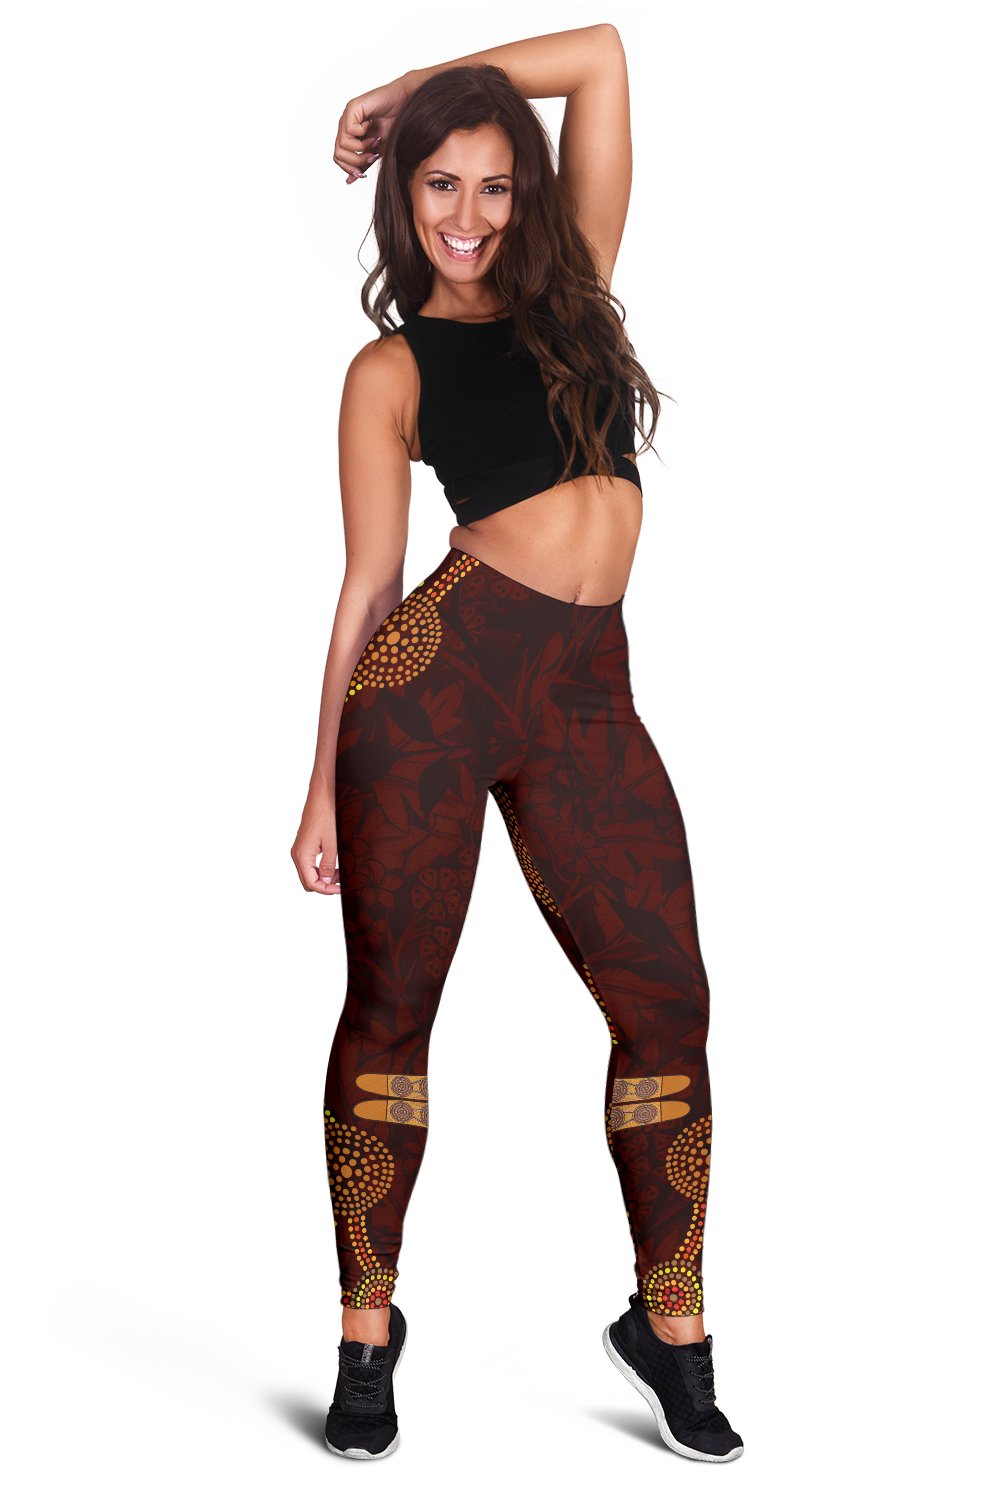 leggings-aboriginal-dot-painting-kangaroo-pants-women